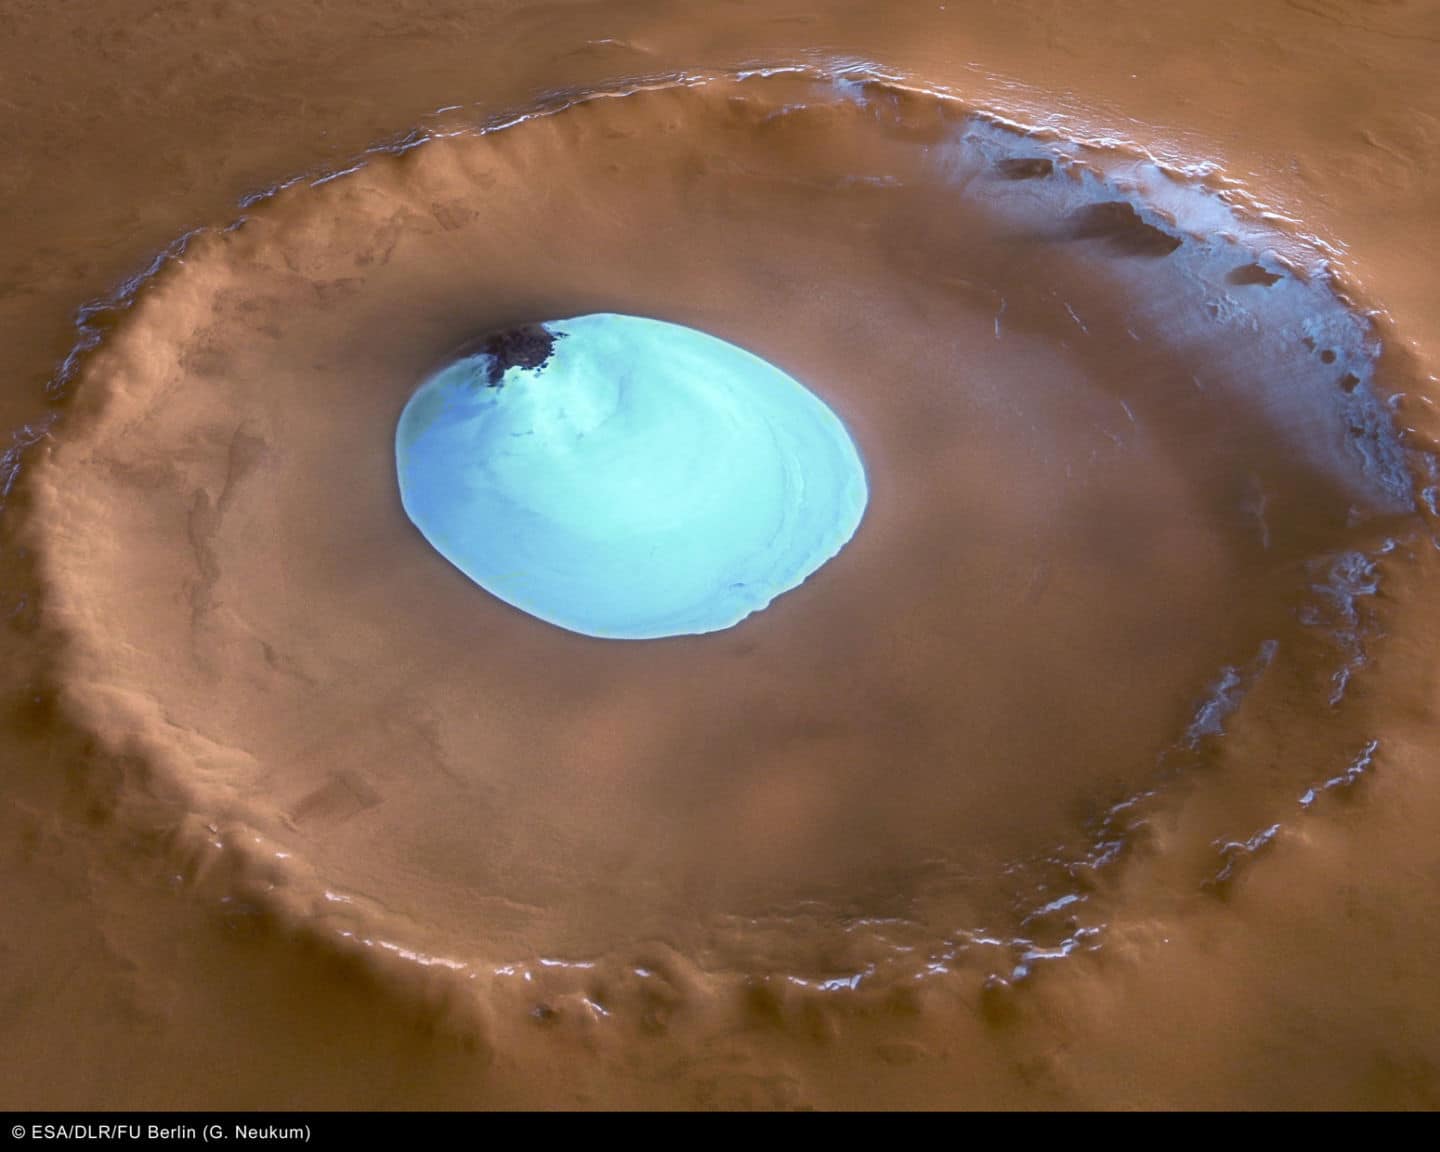 Vista de un cráter sin nombre en las latitudes septentrionales de Marte. El cráter tiene 35 km de ancho y una profundidad máxima de aproximadamente 2 km por debajo del borde del cráter. El parche circular de material brillante ubicado en el centro del cráter es hielo de agua residual.